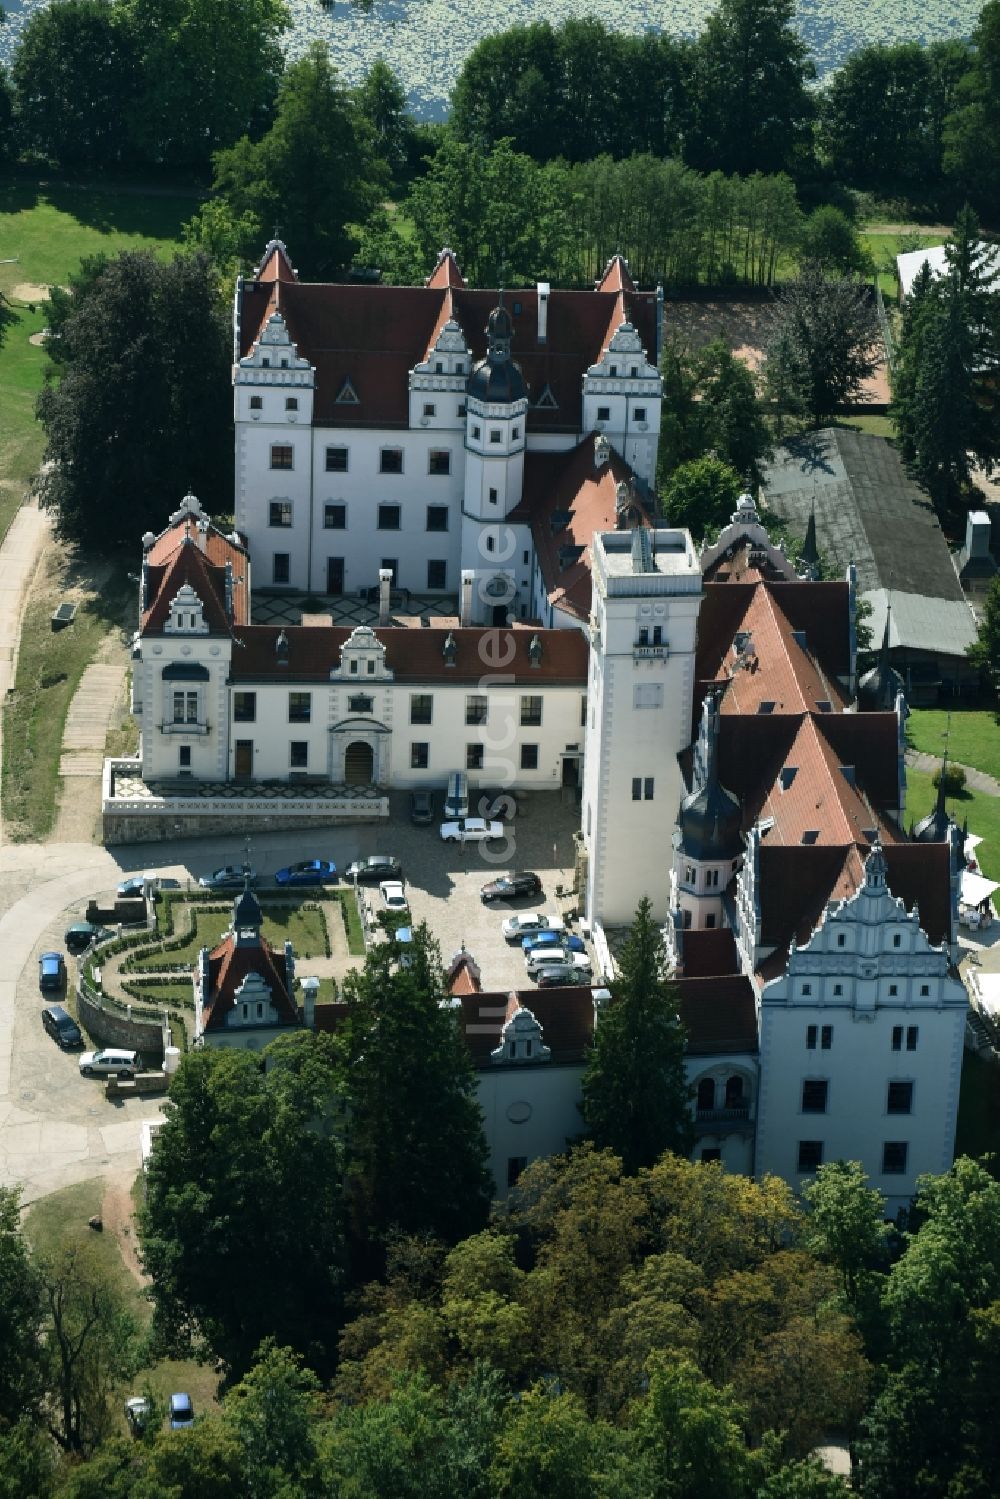 Luftbild Boitzenburger Land - Schloss Boitzenburg Templiner Straße in Boitzenburger Land im Bundesland Brandenburg